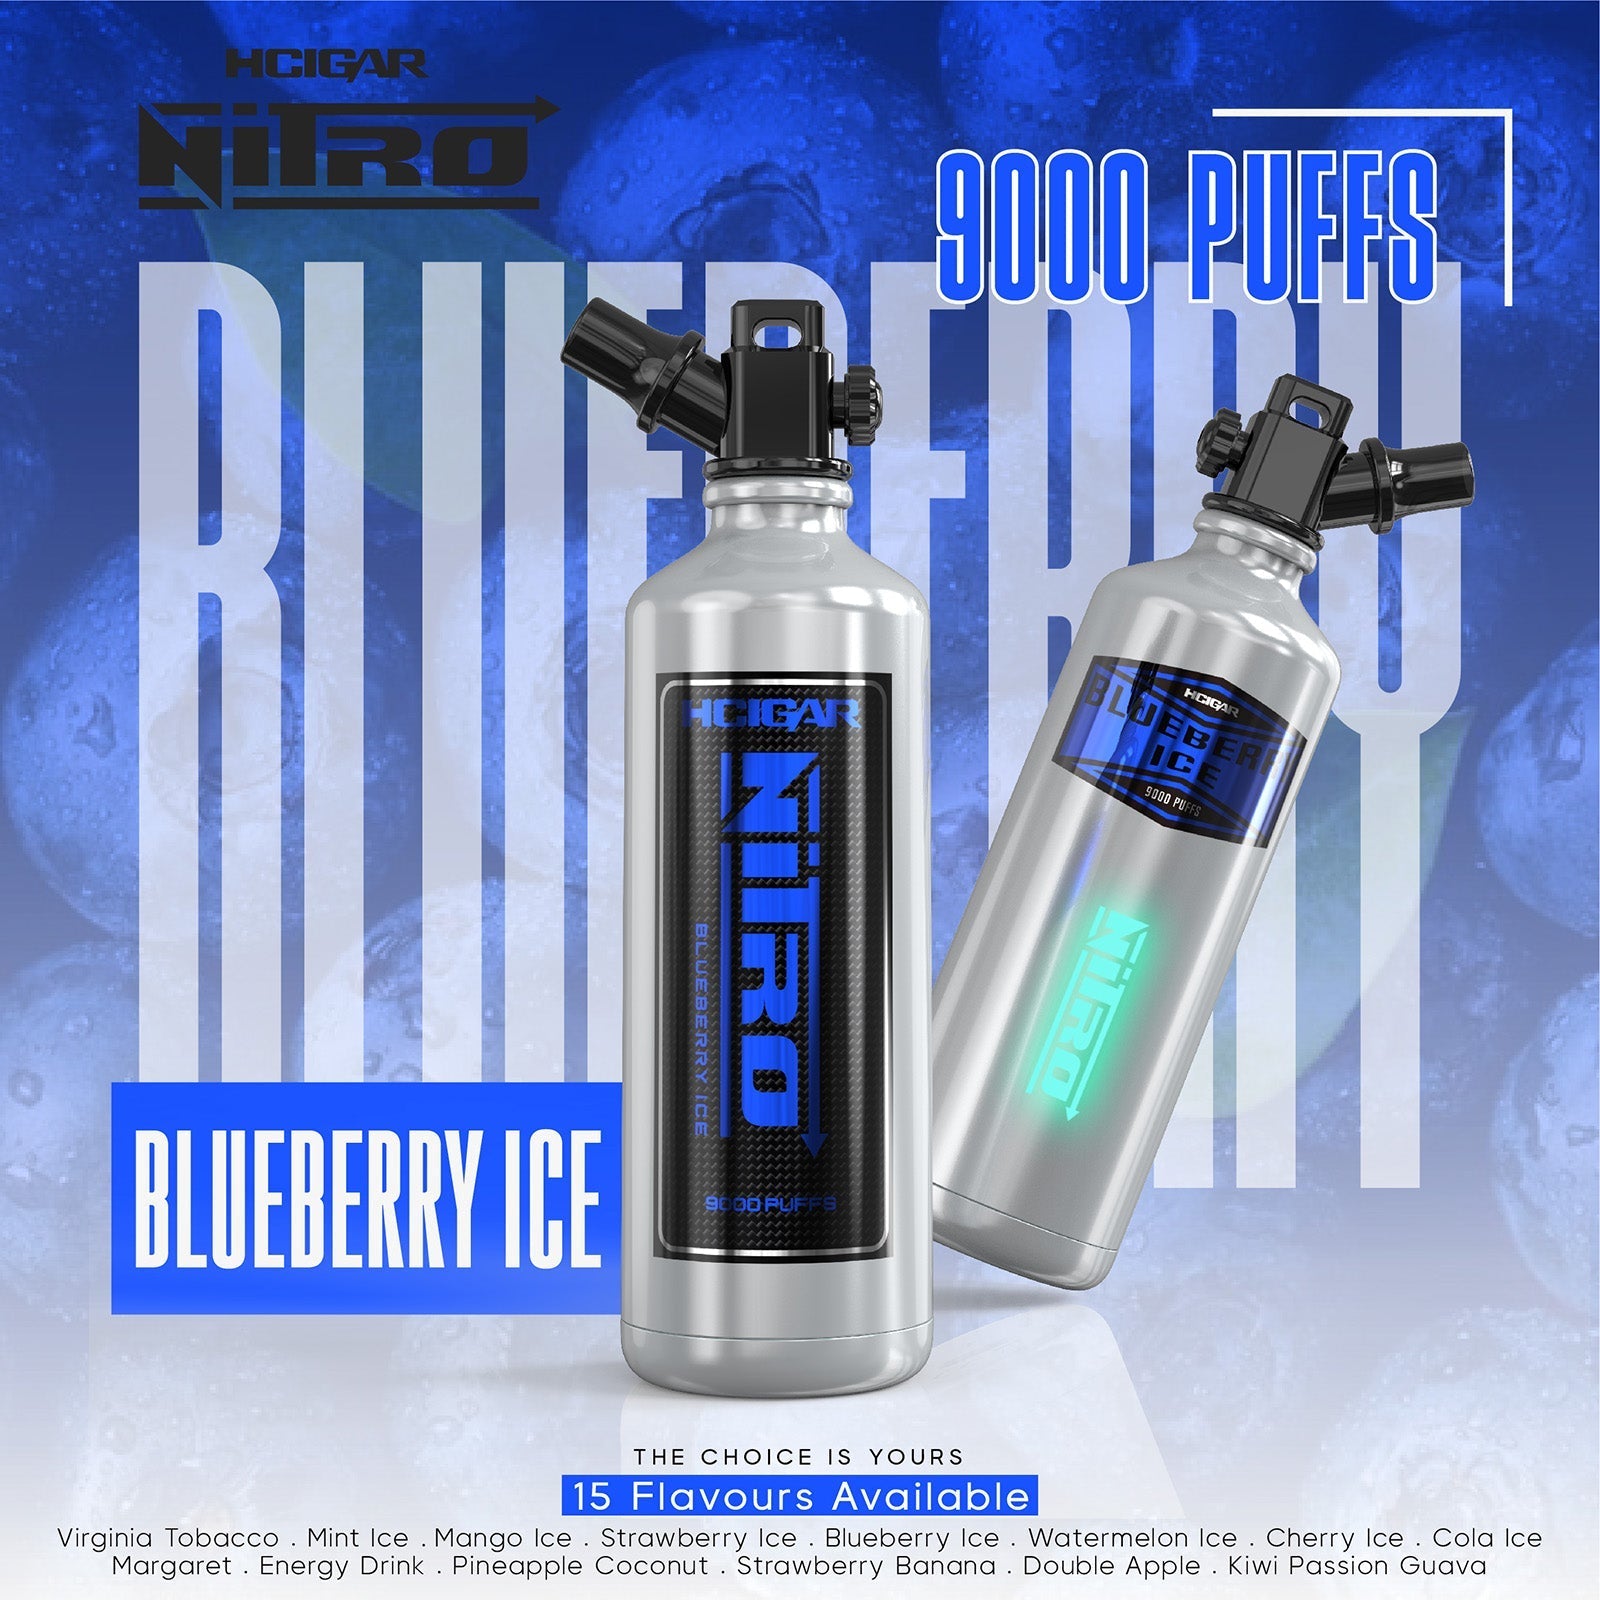 NITRO 9000 PUFFS - BLUEBERRY ICE - HAPPYTRAIL